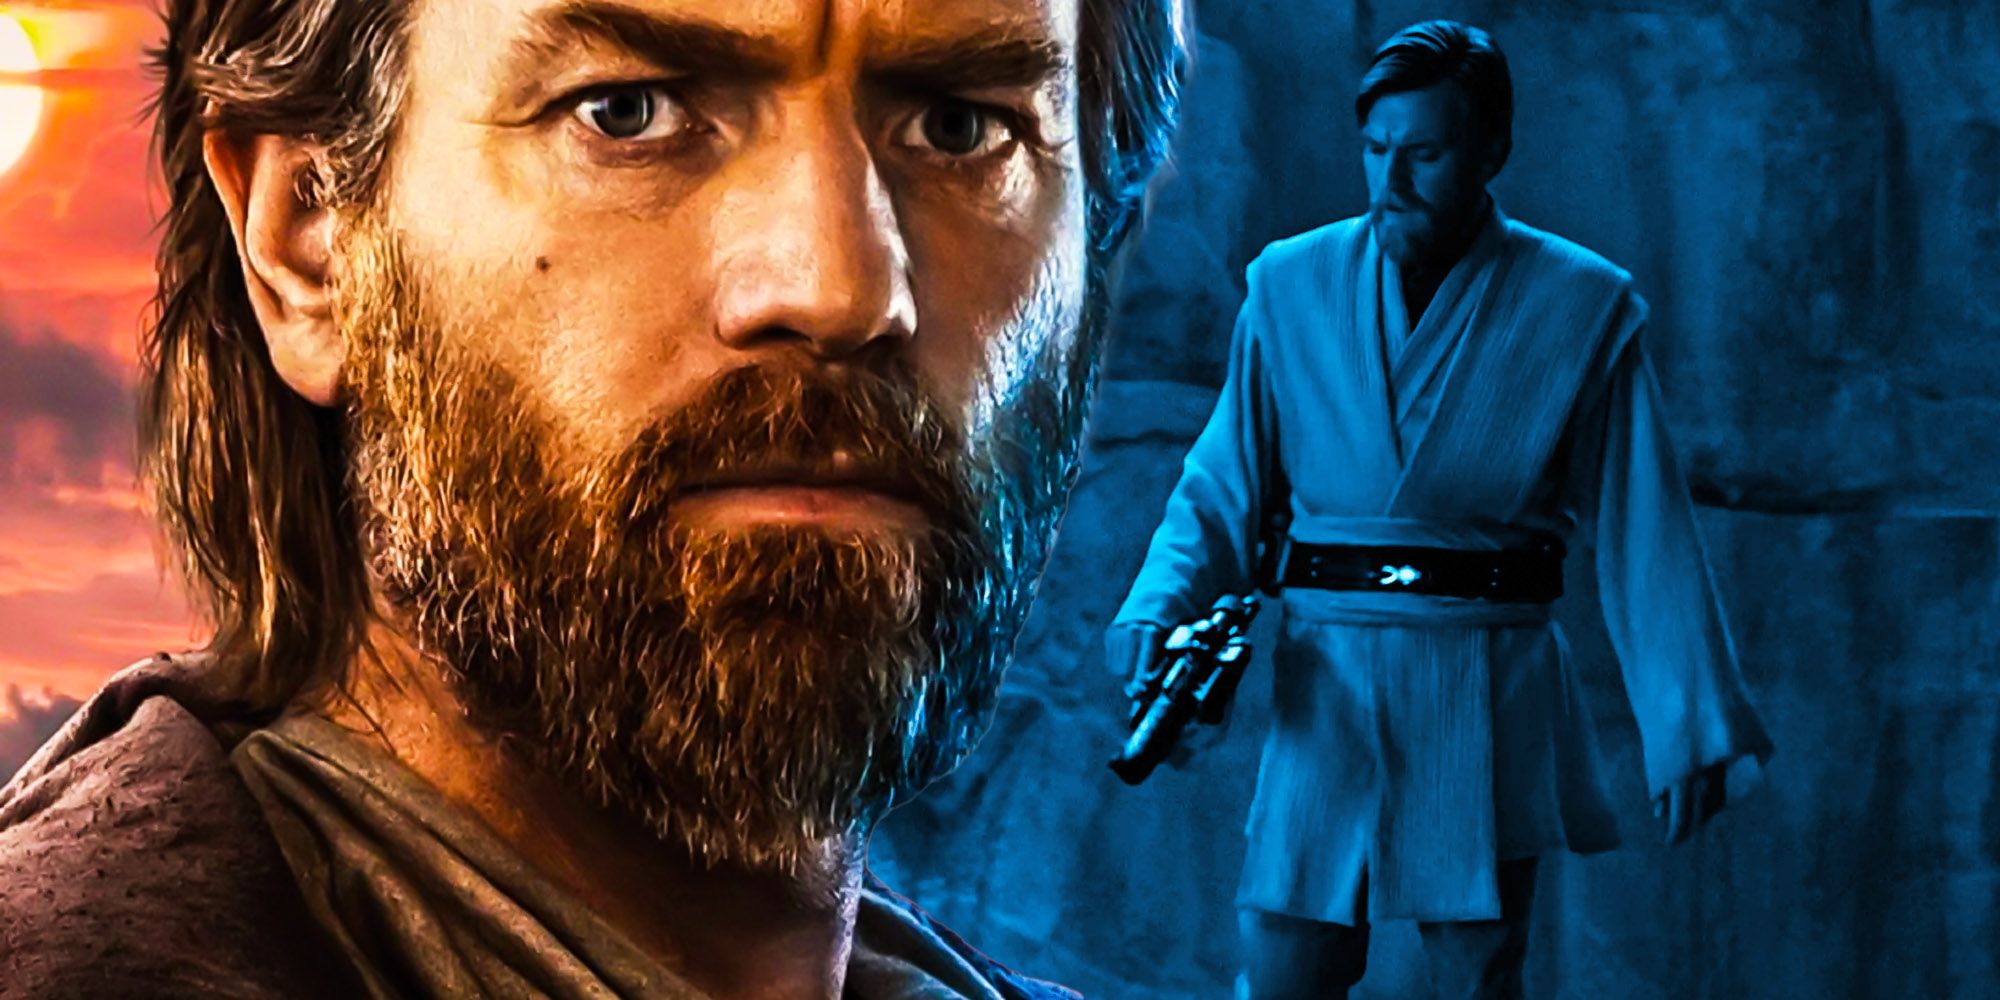 El tráiler de Obi-Wan obliga a Kenobi a traicionar su creencia "incivilizada"